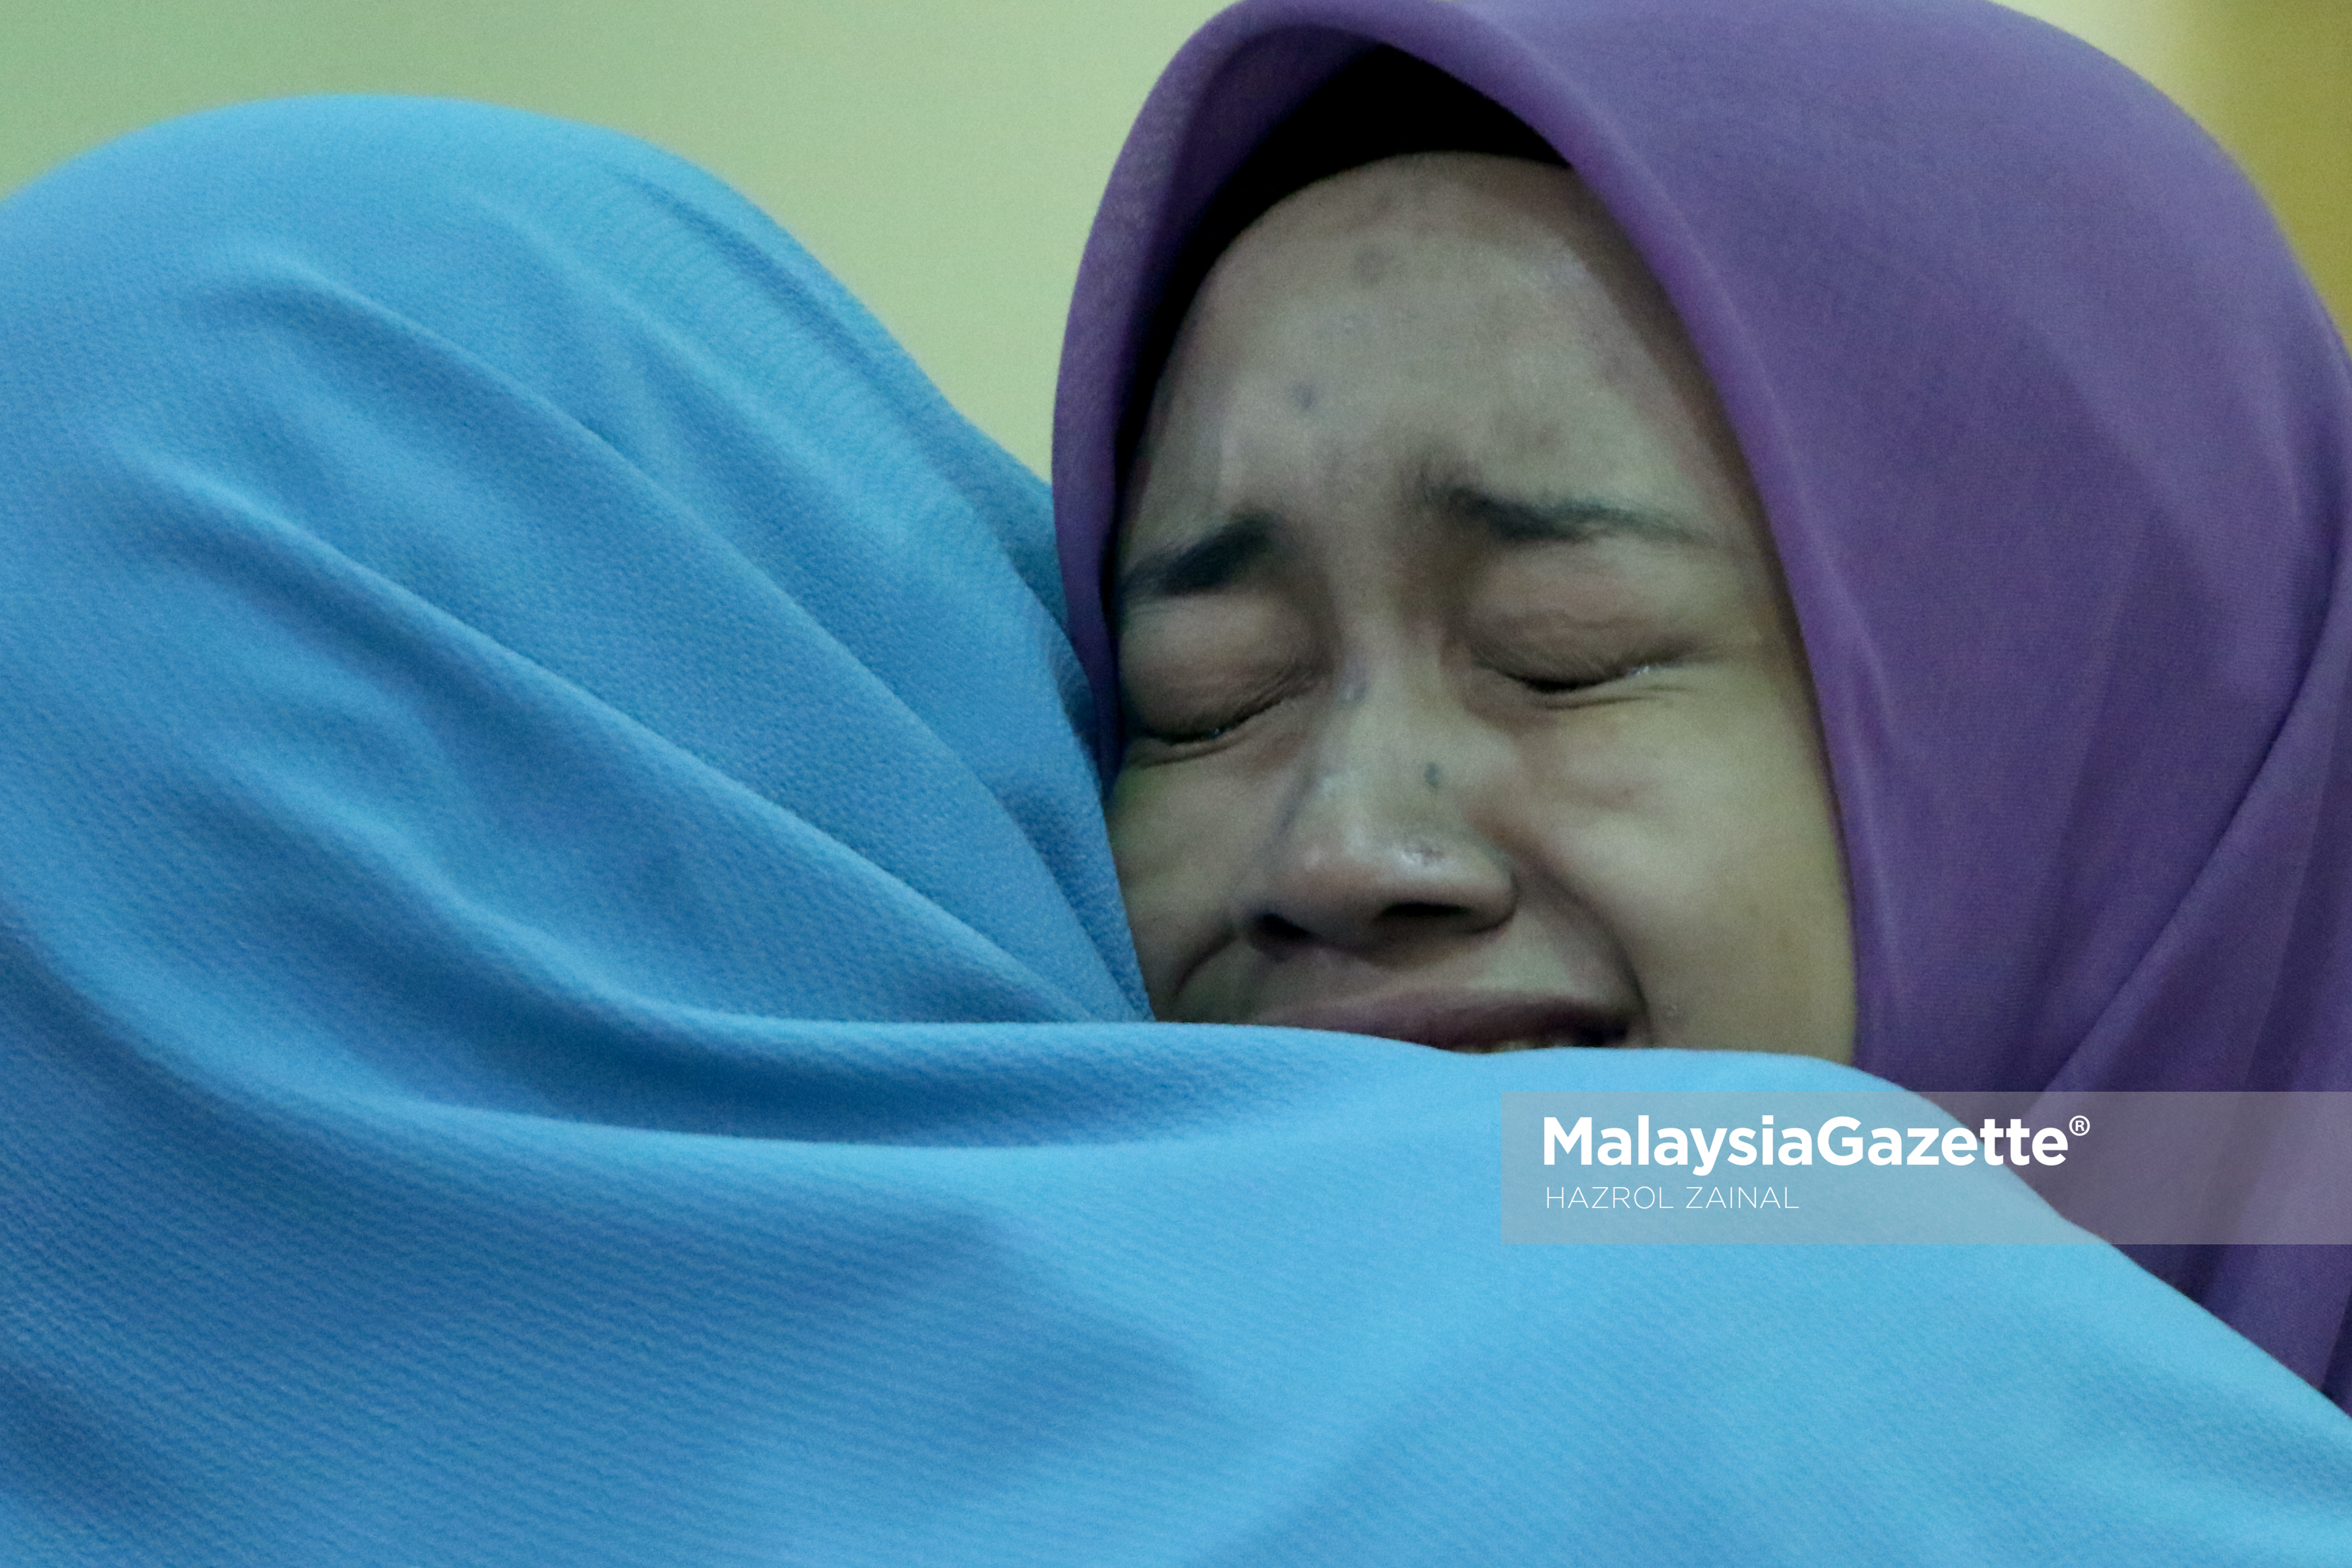 Salah seorang pelajar menitiskan air matanya kerana terlalu gembira selepas menerima keputusan cemerlang 9A dalam peperiksaan Sijil Pelajaran Malaysia (SPM) 2016 di Sekolah Seri Puteri, Cyberjaya. foto MOHD HAZROL ZAINAL, 16 MAC 2017.